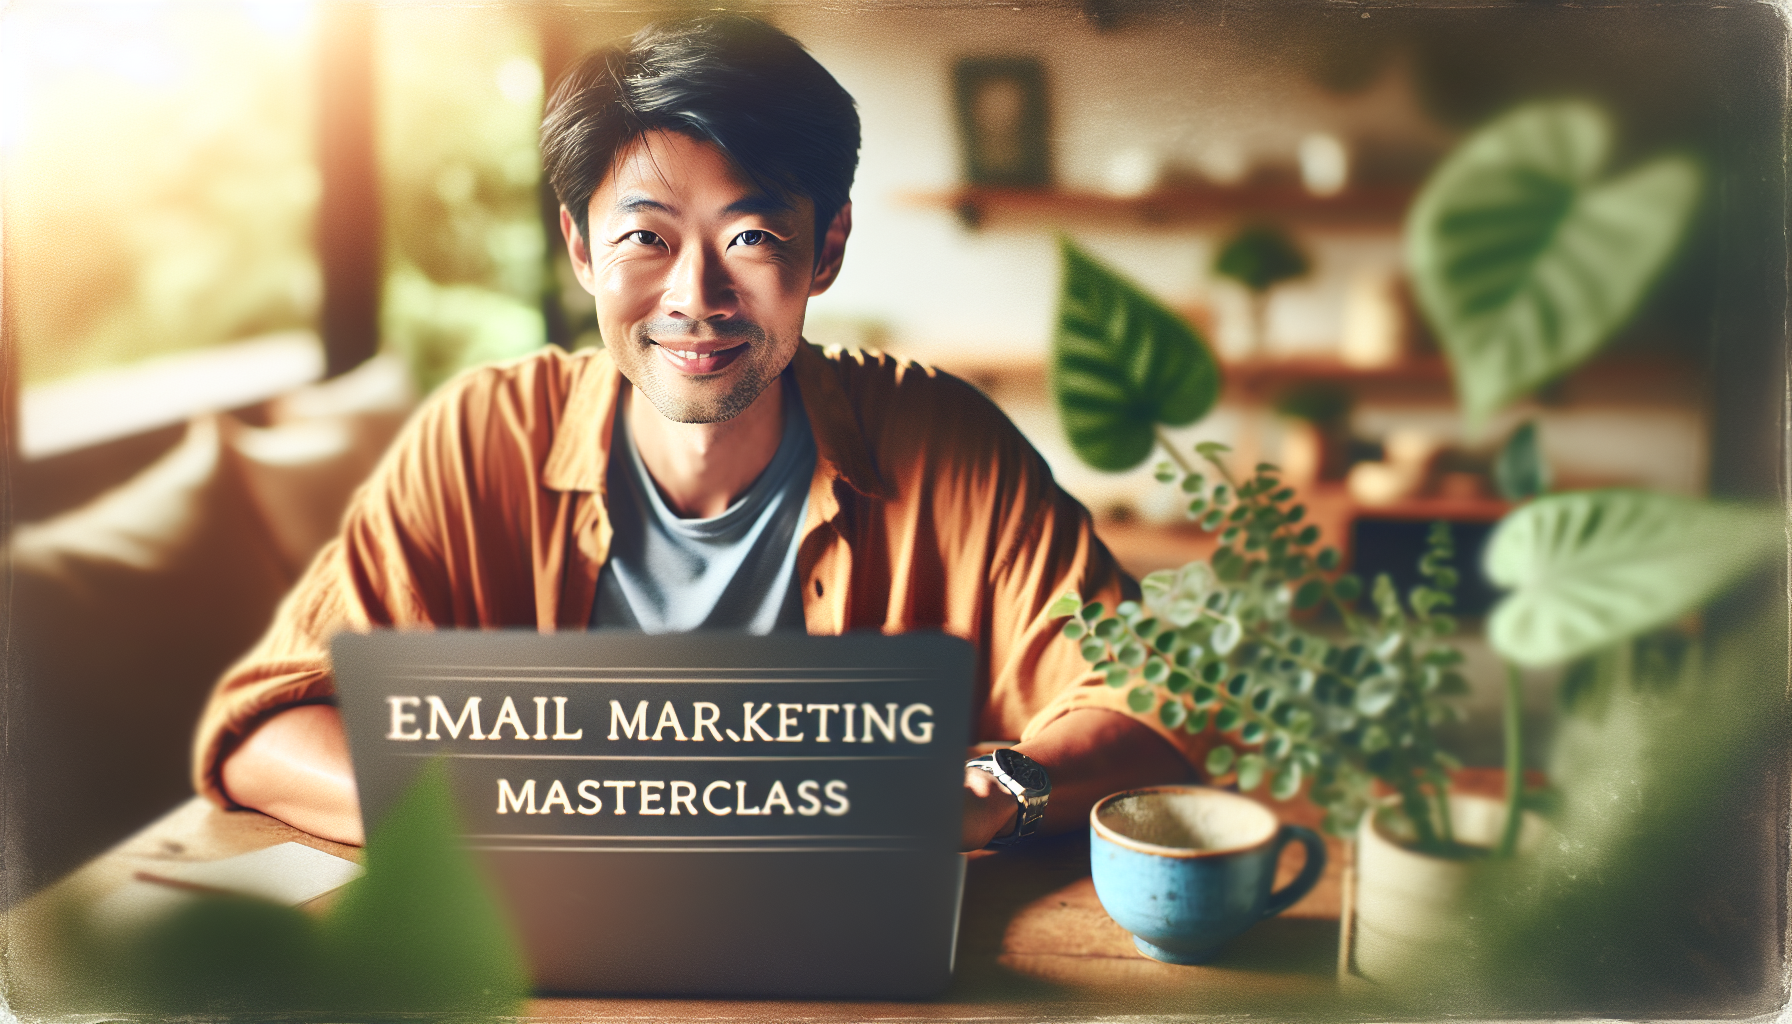 découvrez toutes les clés pour réussir votre stratégie d'email marketing grâce à notre formation en marketing digital.